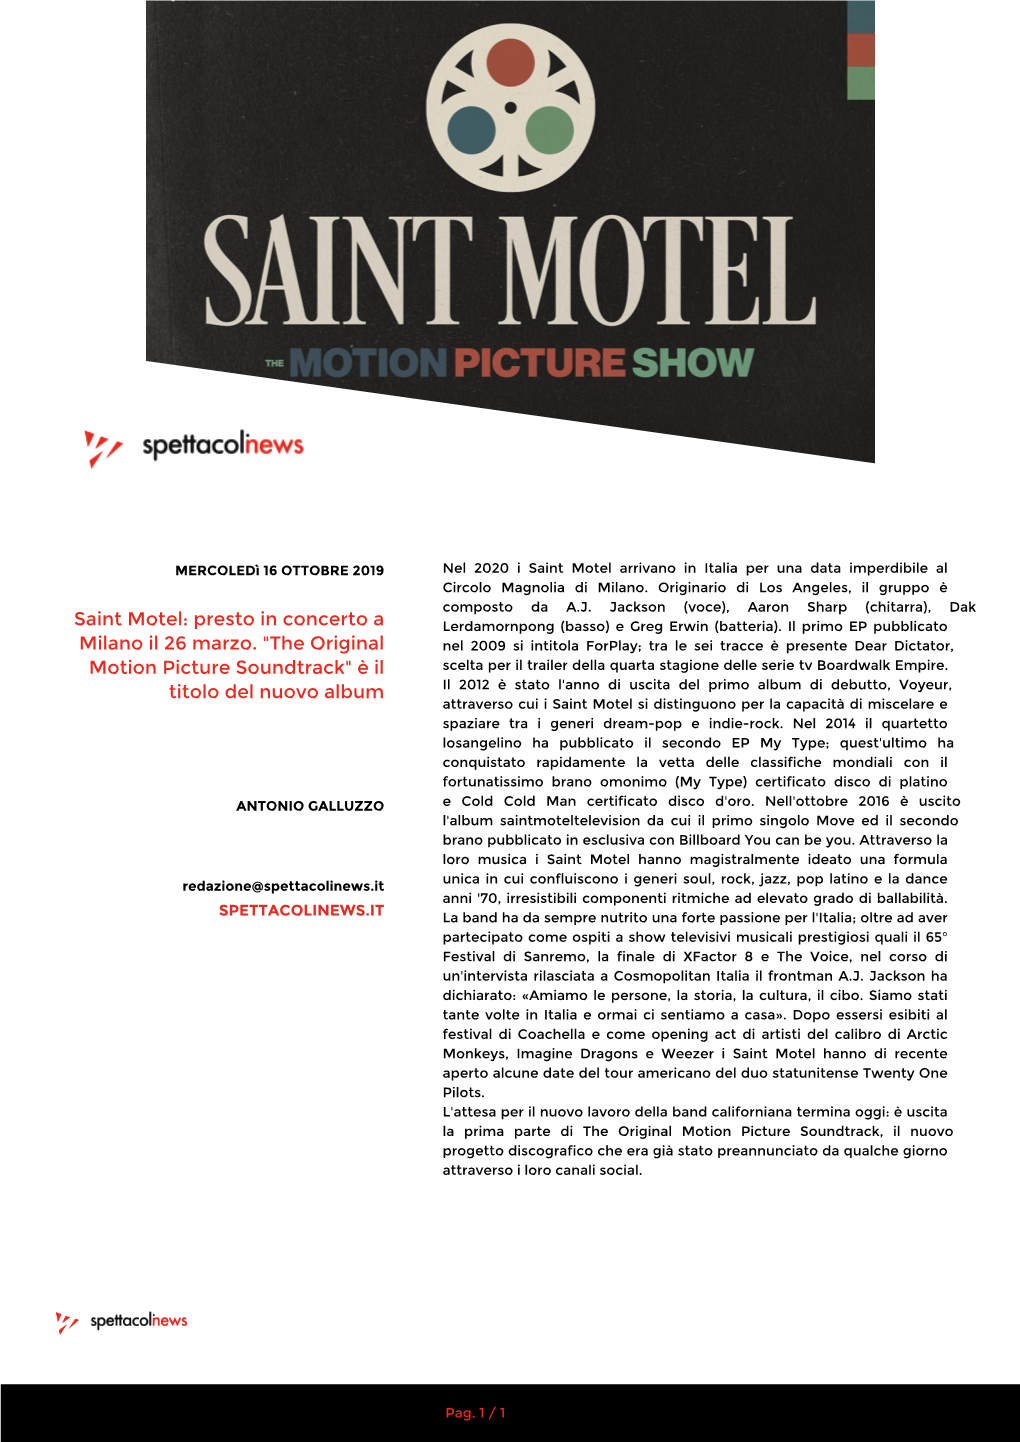 Saint Motel Arrivano in Italia Per Una Data Imperdibile Al Circolo Magnolia Di Milano